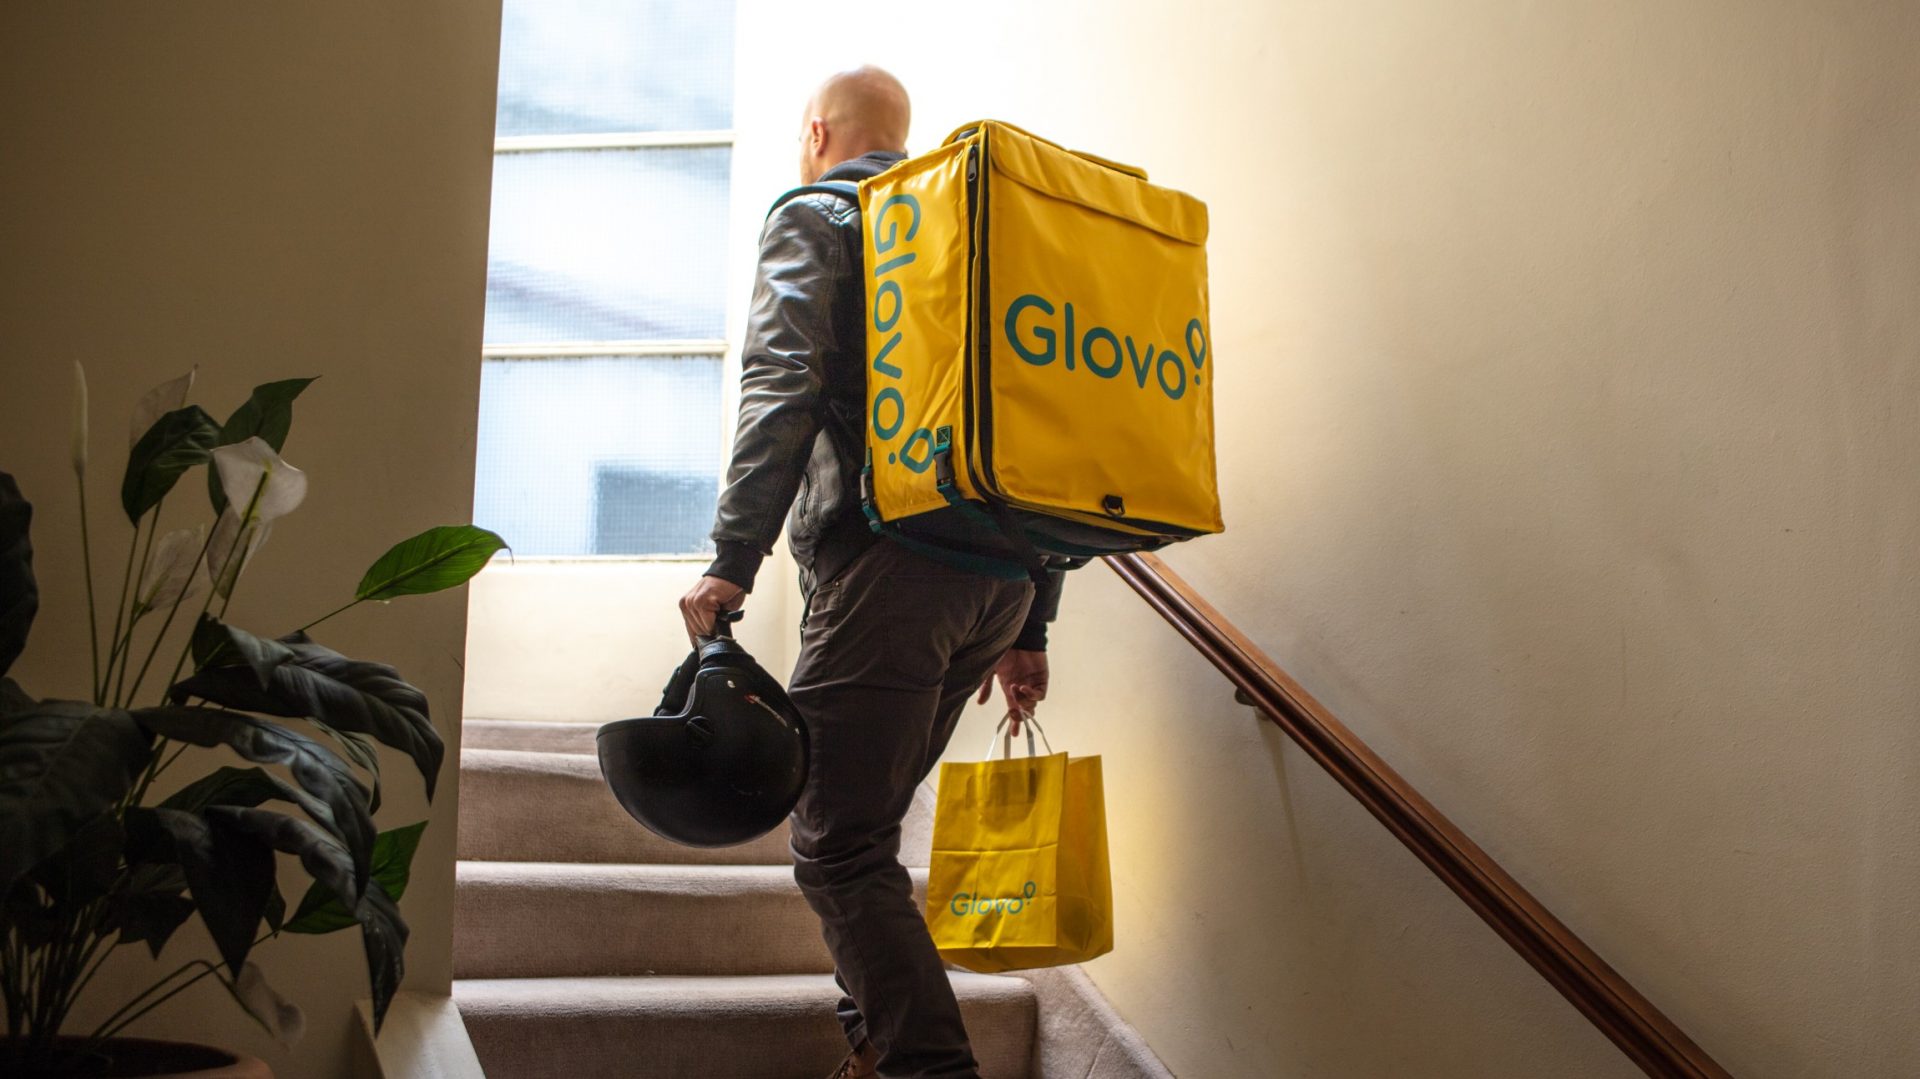 У Франківську запустився сервіс доставки Glovo. Як він працюватиме?